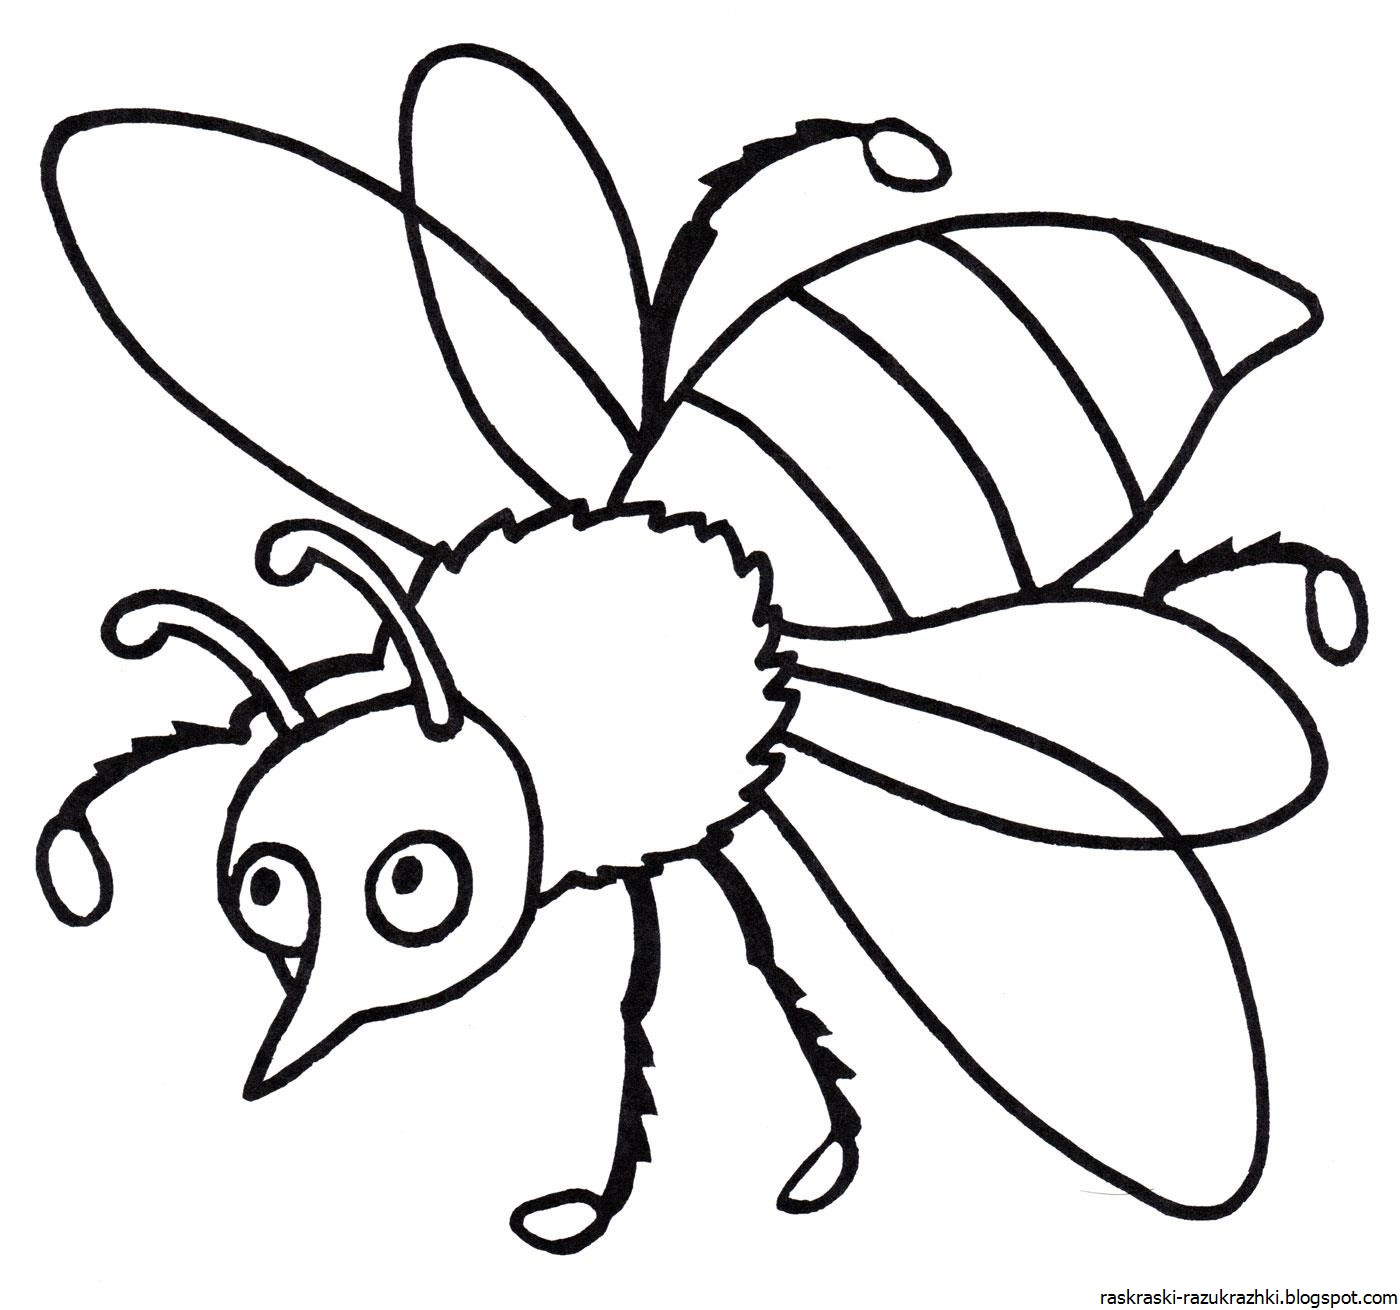 Насекомые раскраска для детей. Раскраски насекомые для детей 5-6 лет. Пчела раскраска. Раскраска насекомые для малышей. Раскраска насекомые для детей 3 лет